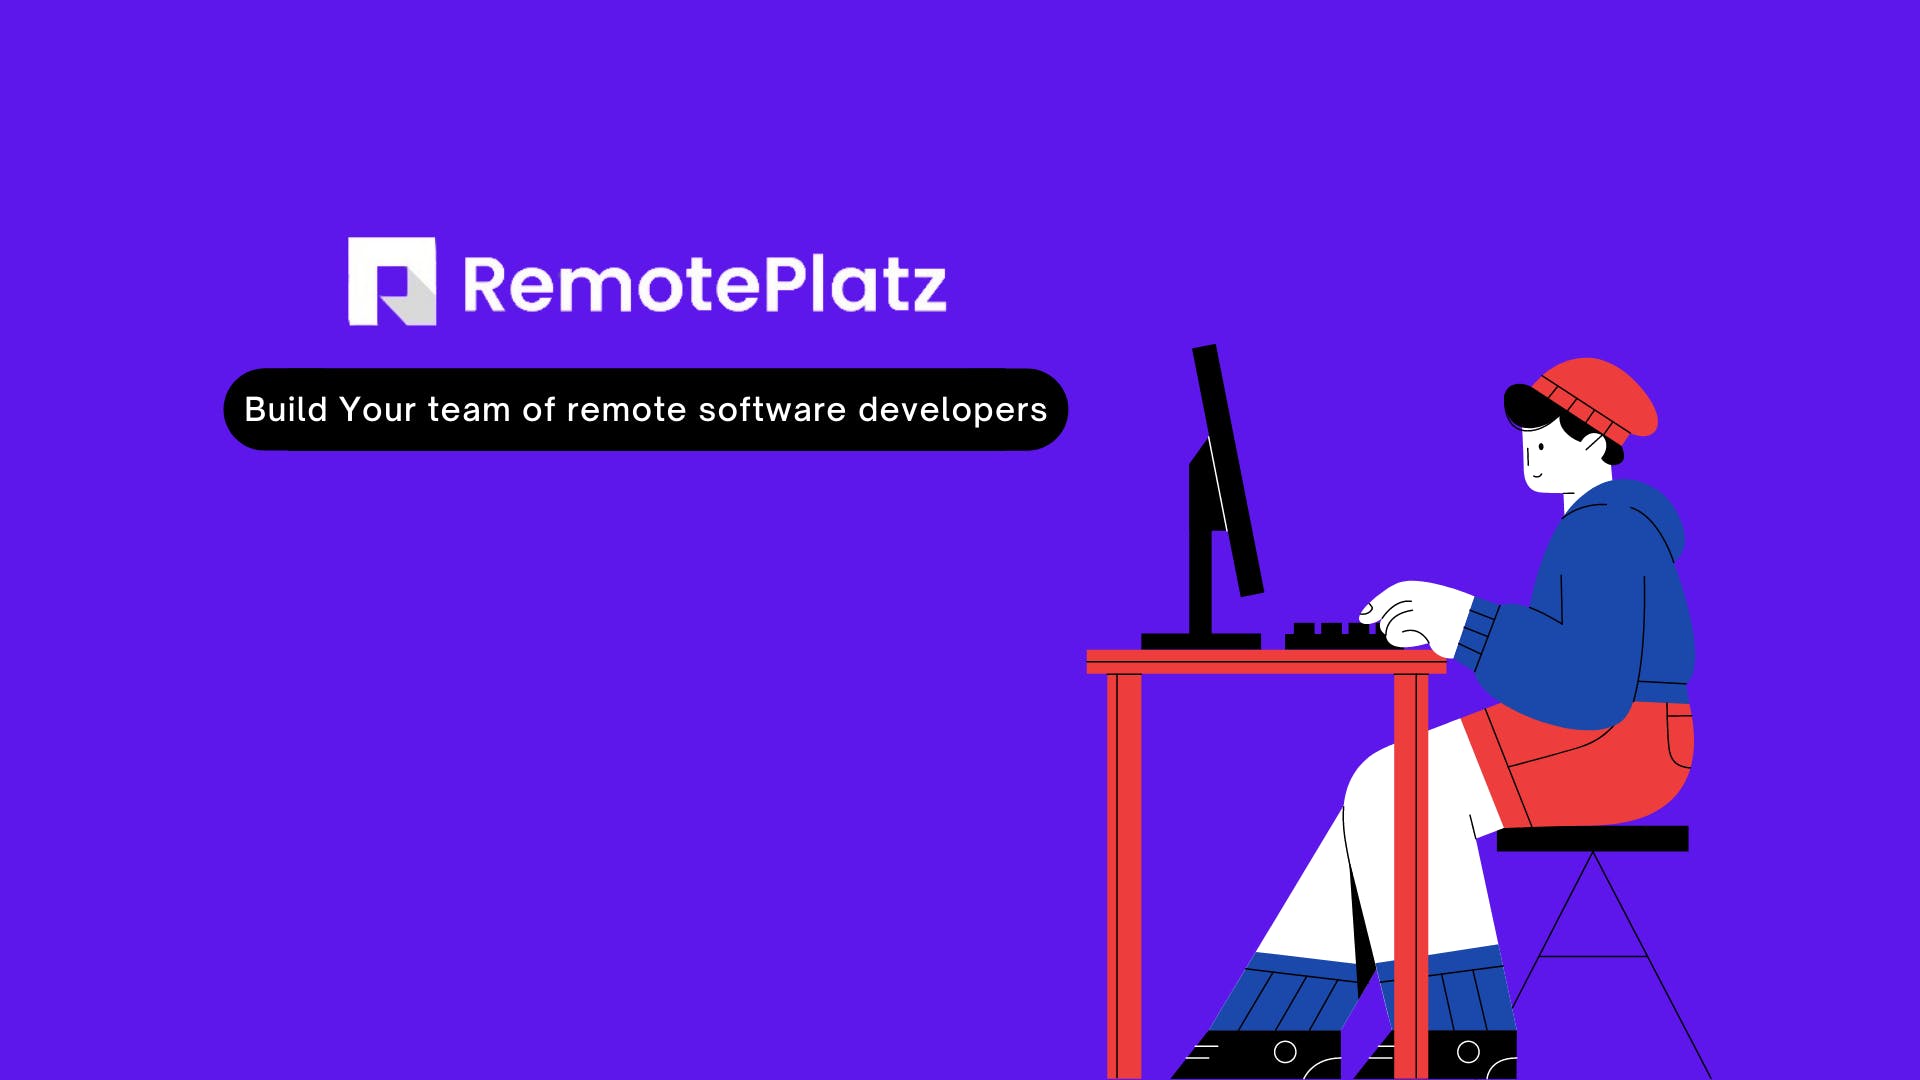 Find detailed information about RemotePlatz